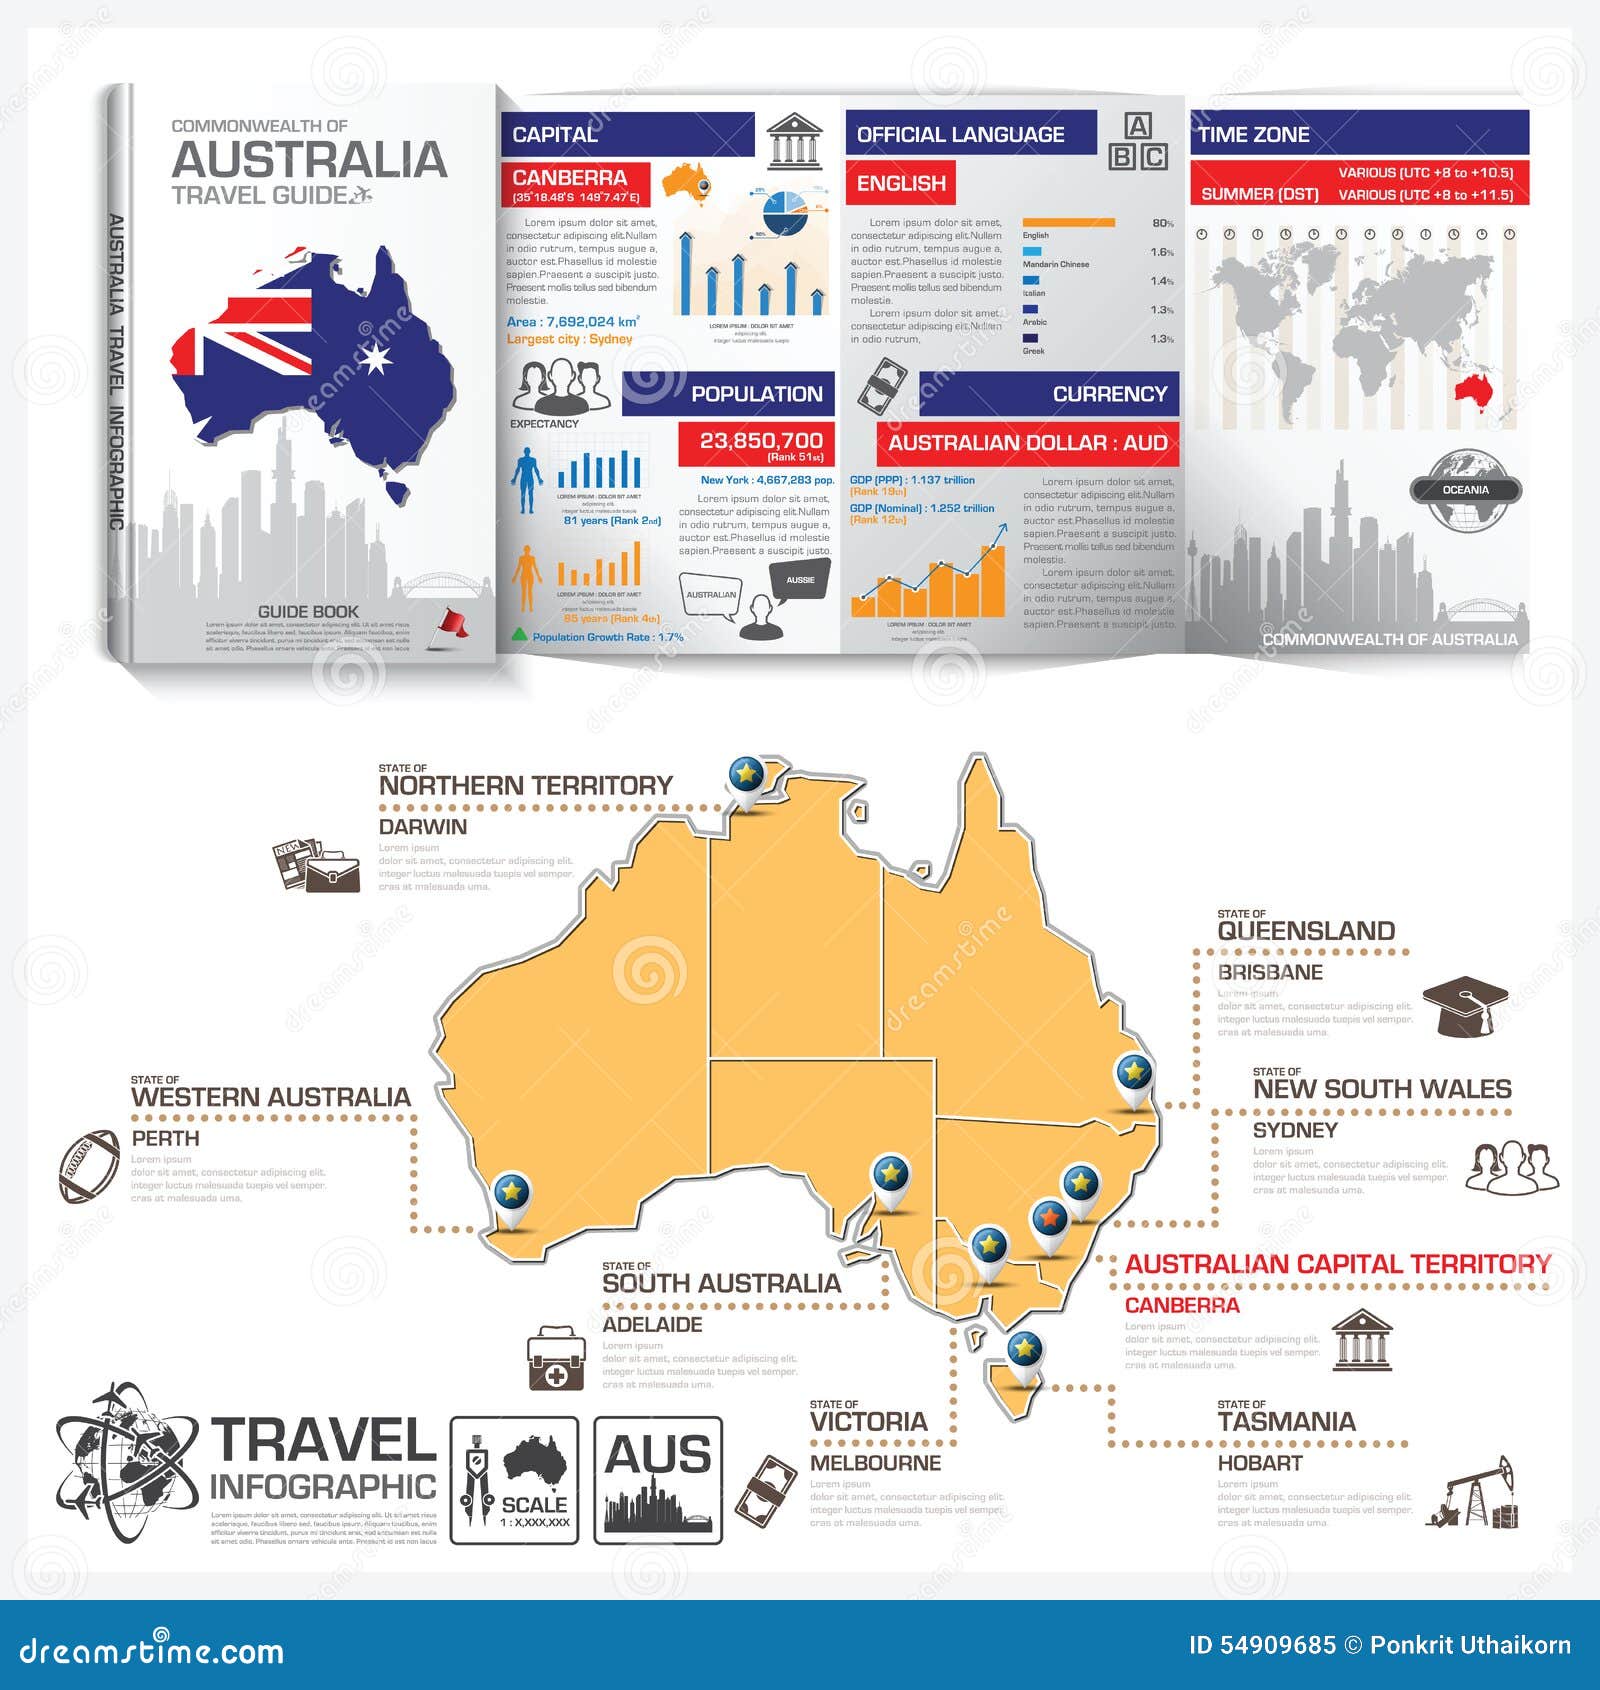 Graphic design australia price guide